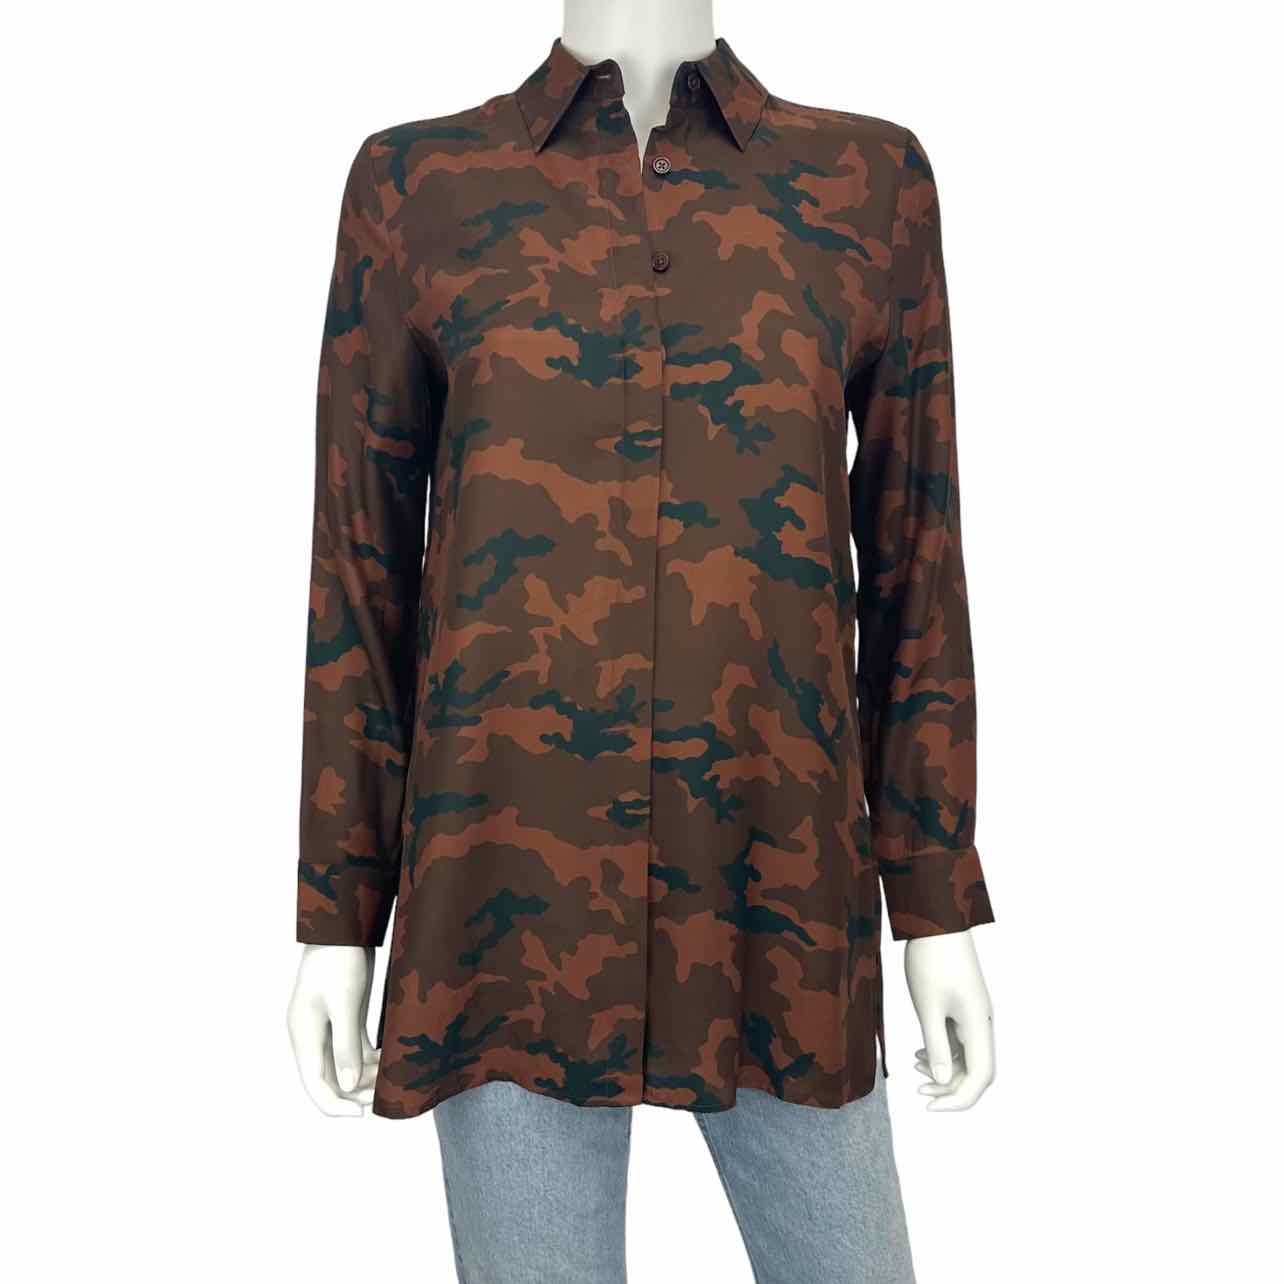 Acrobat 100% Silk Brown Camo Print Button Down Shirt Size XS